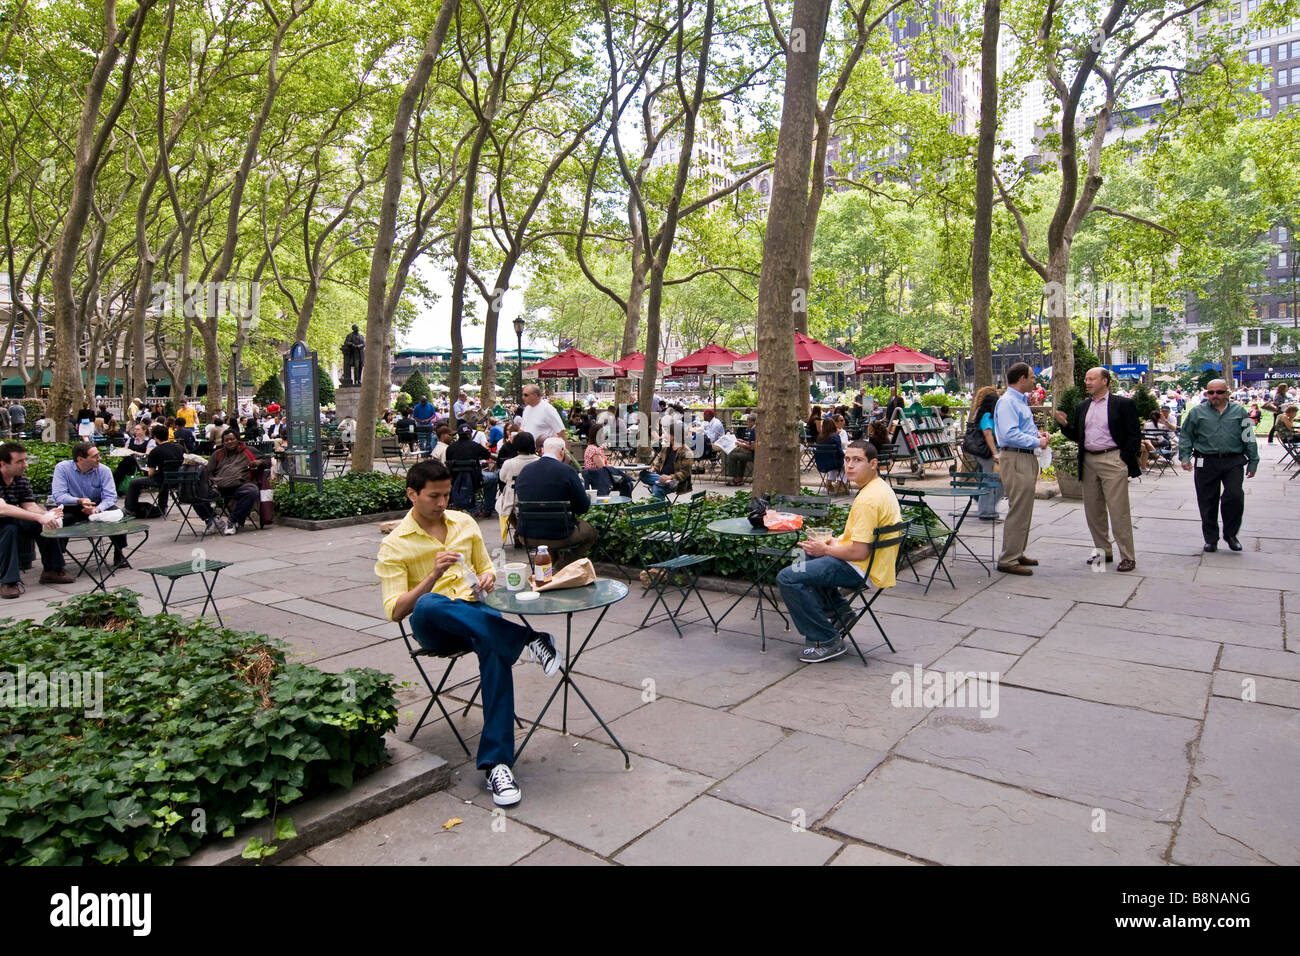 Leute sitzen an kleinen Tischen unter hohen Bäumen in einem öffentlichen Garten Stockfoto